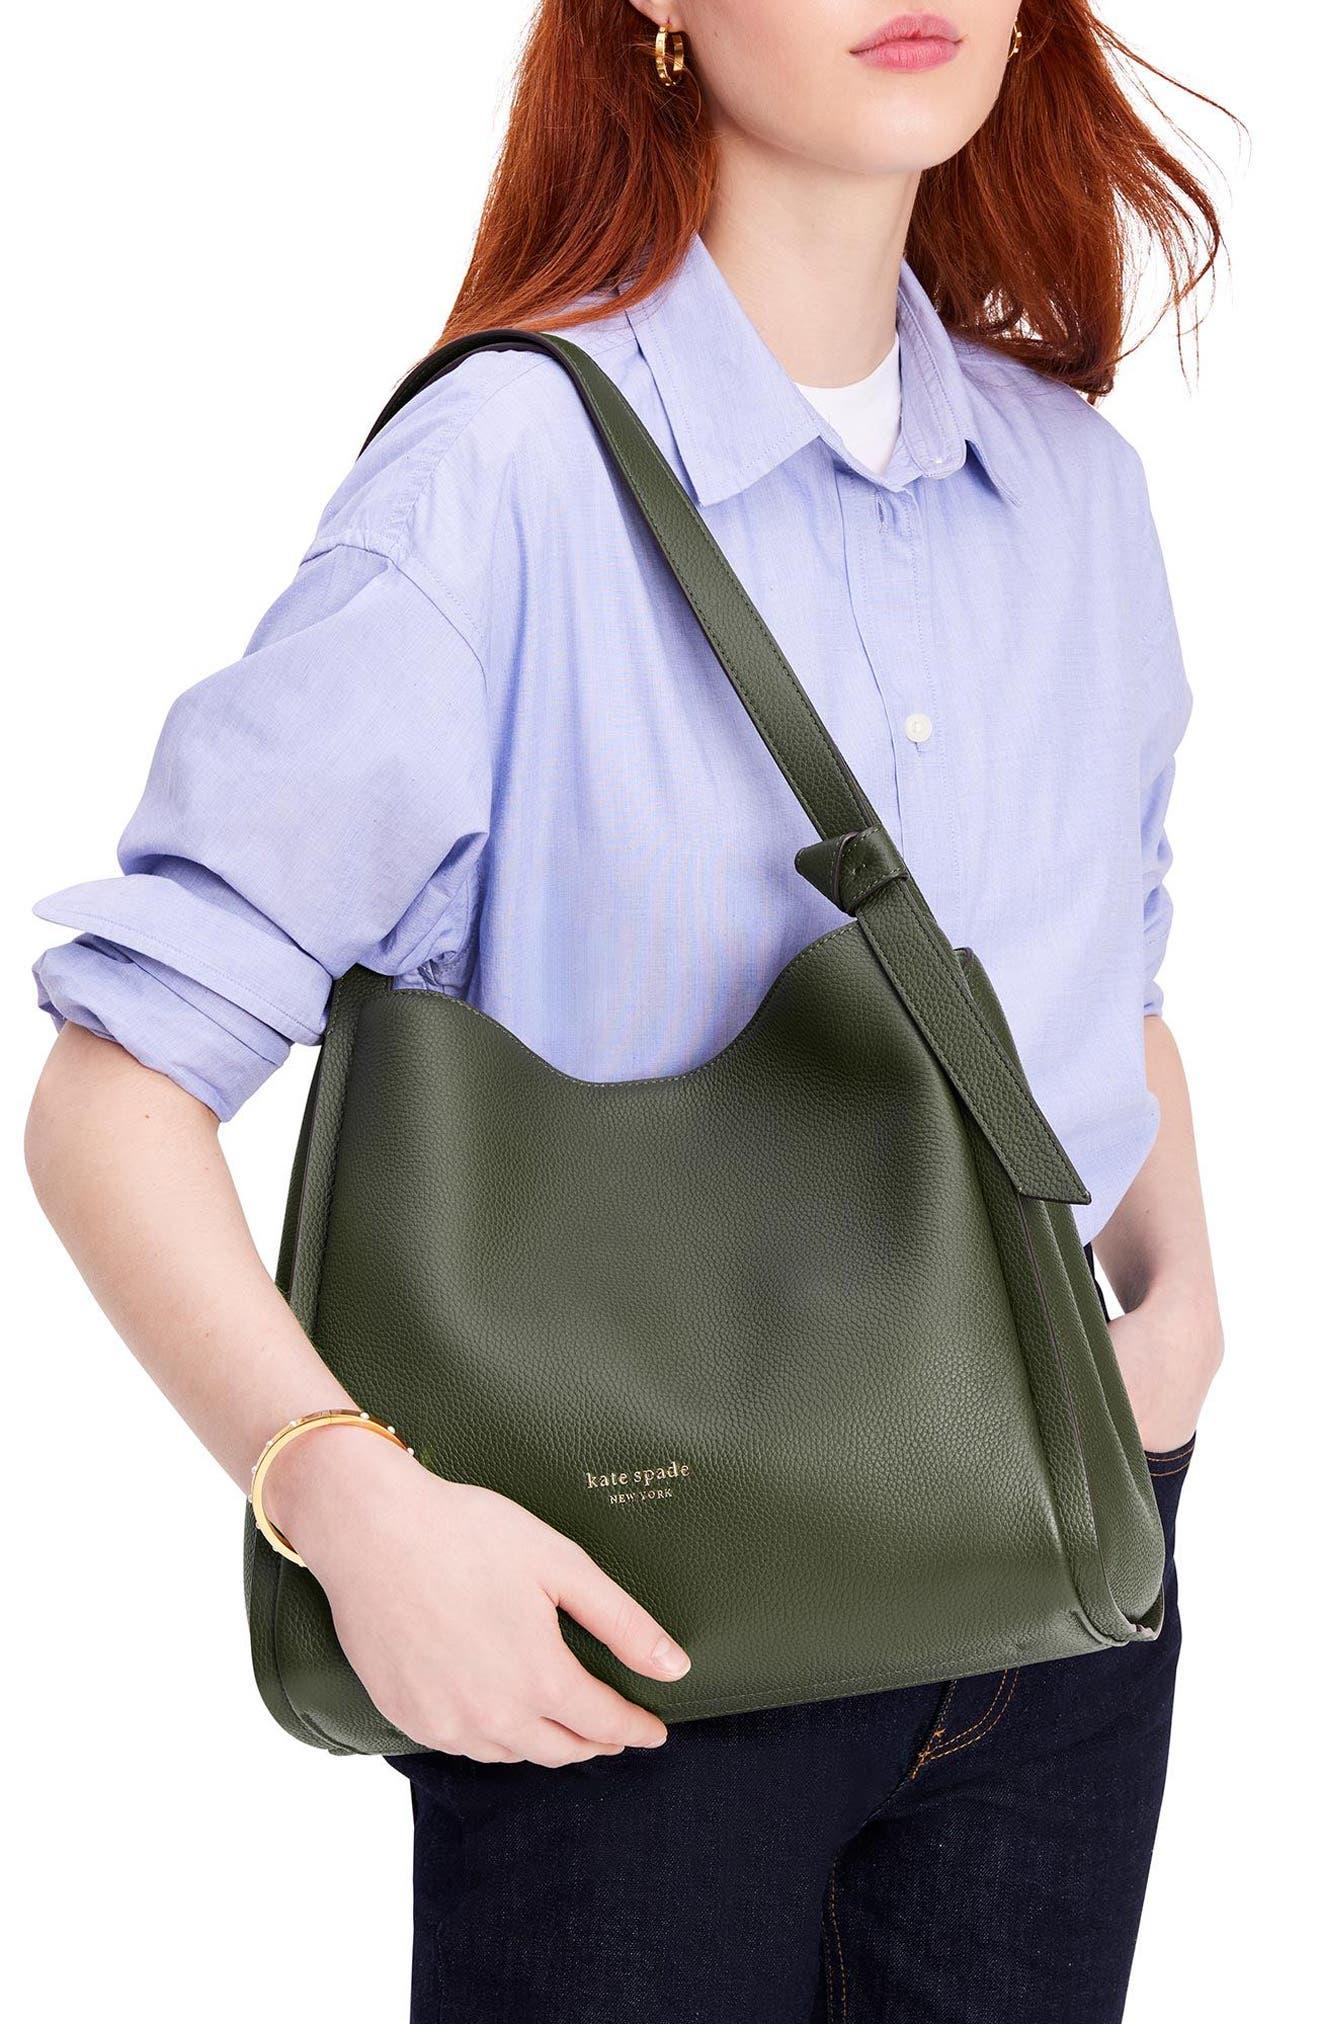 Knott Large Shoulder Bag, Kate Spade New York in 2023